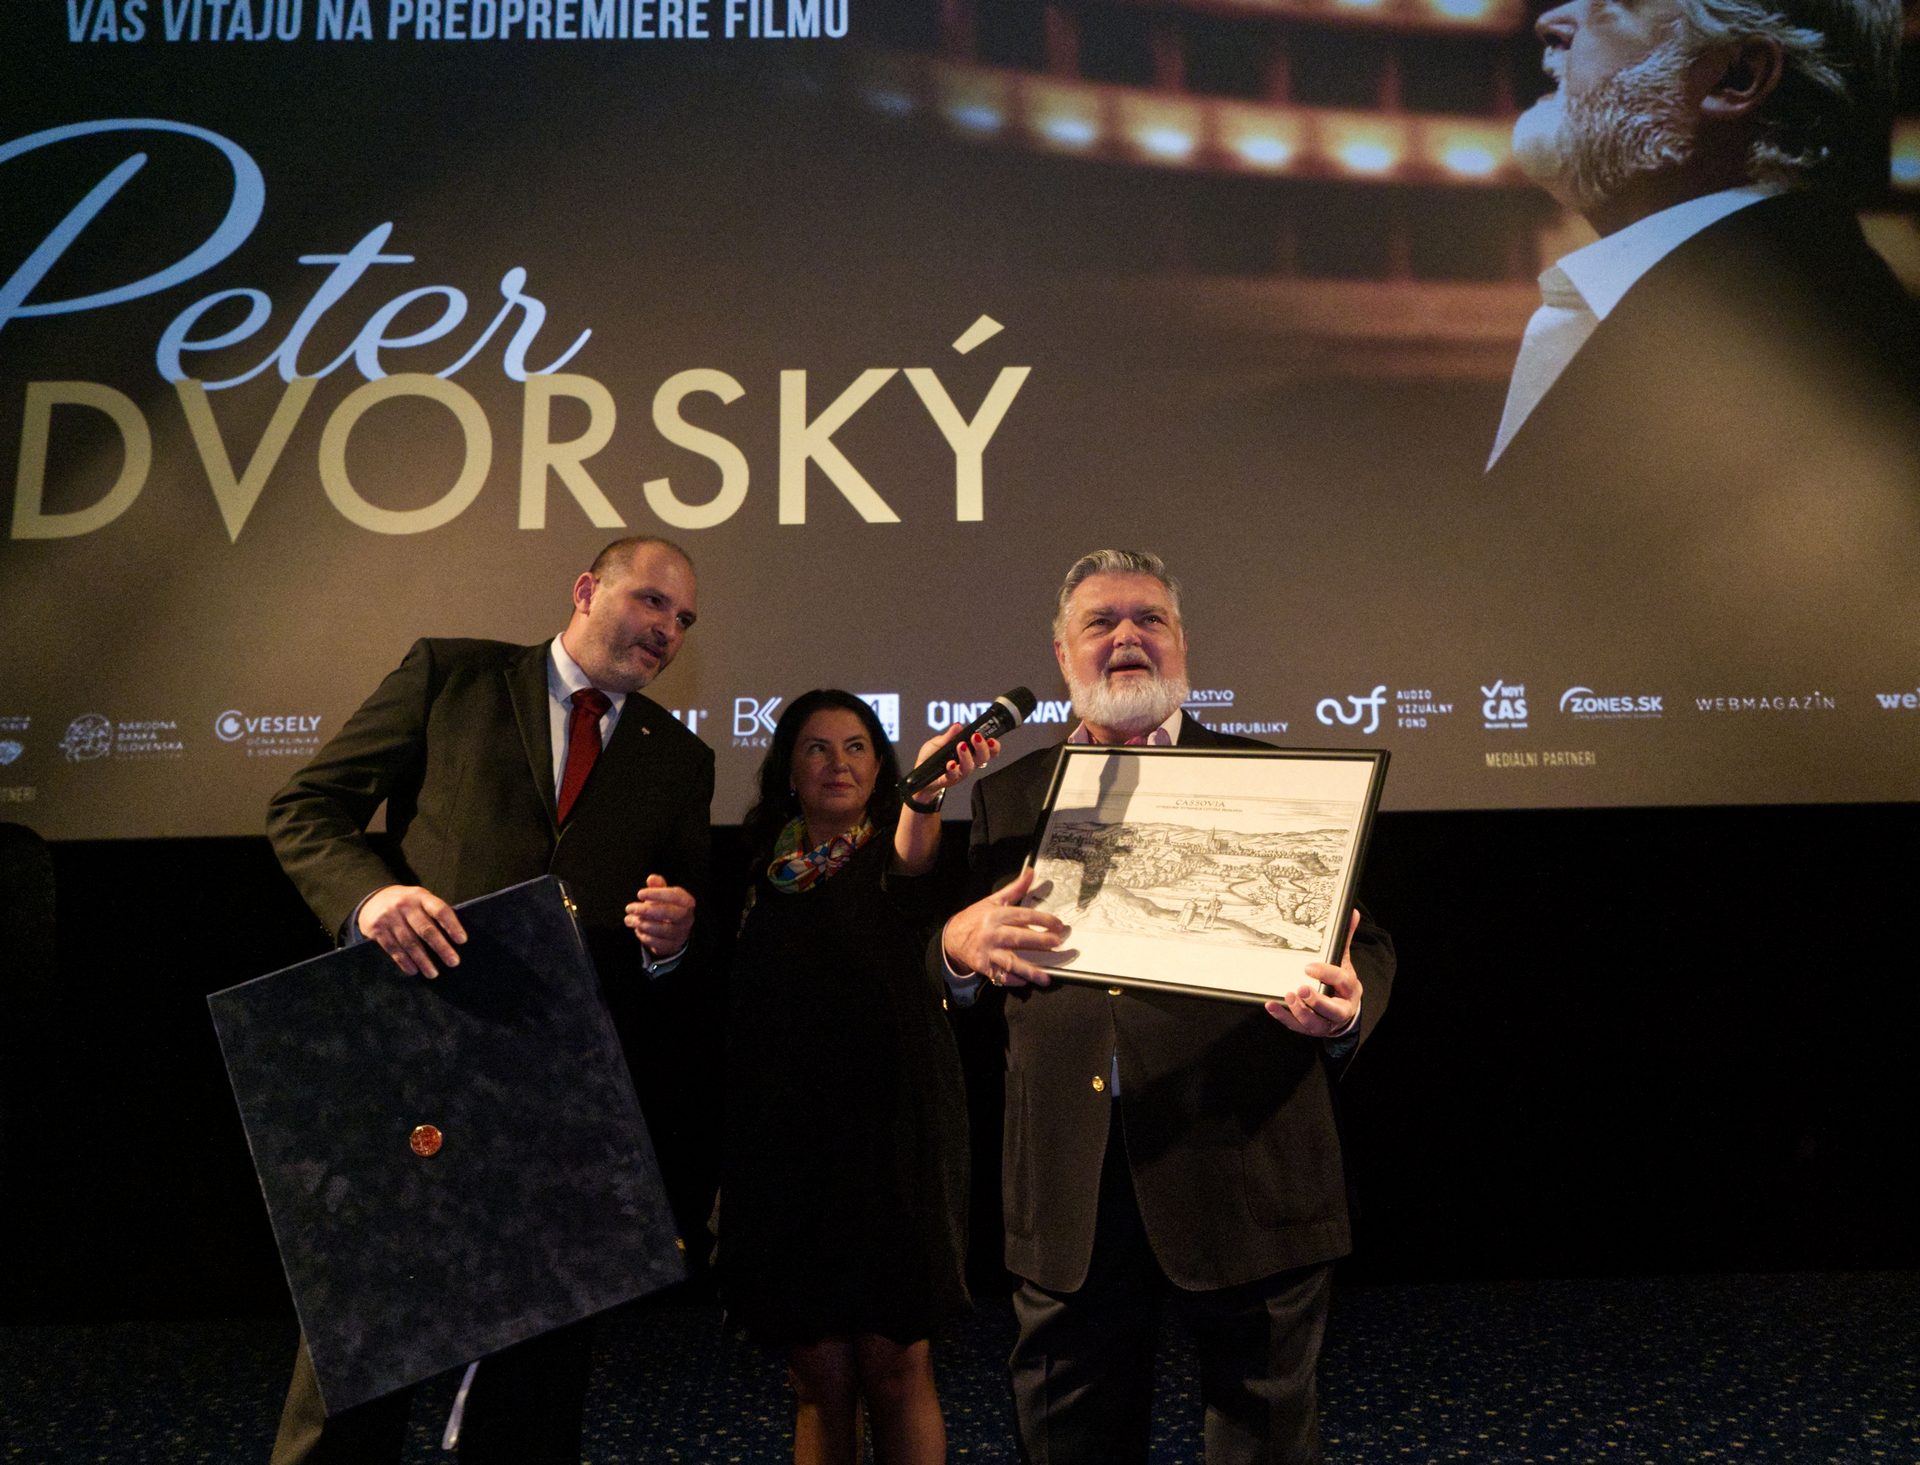 PeterDvorskyFilm15